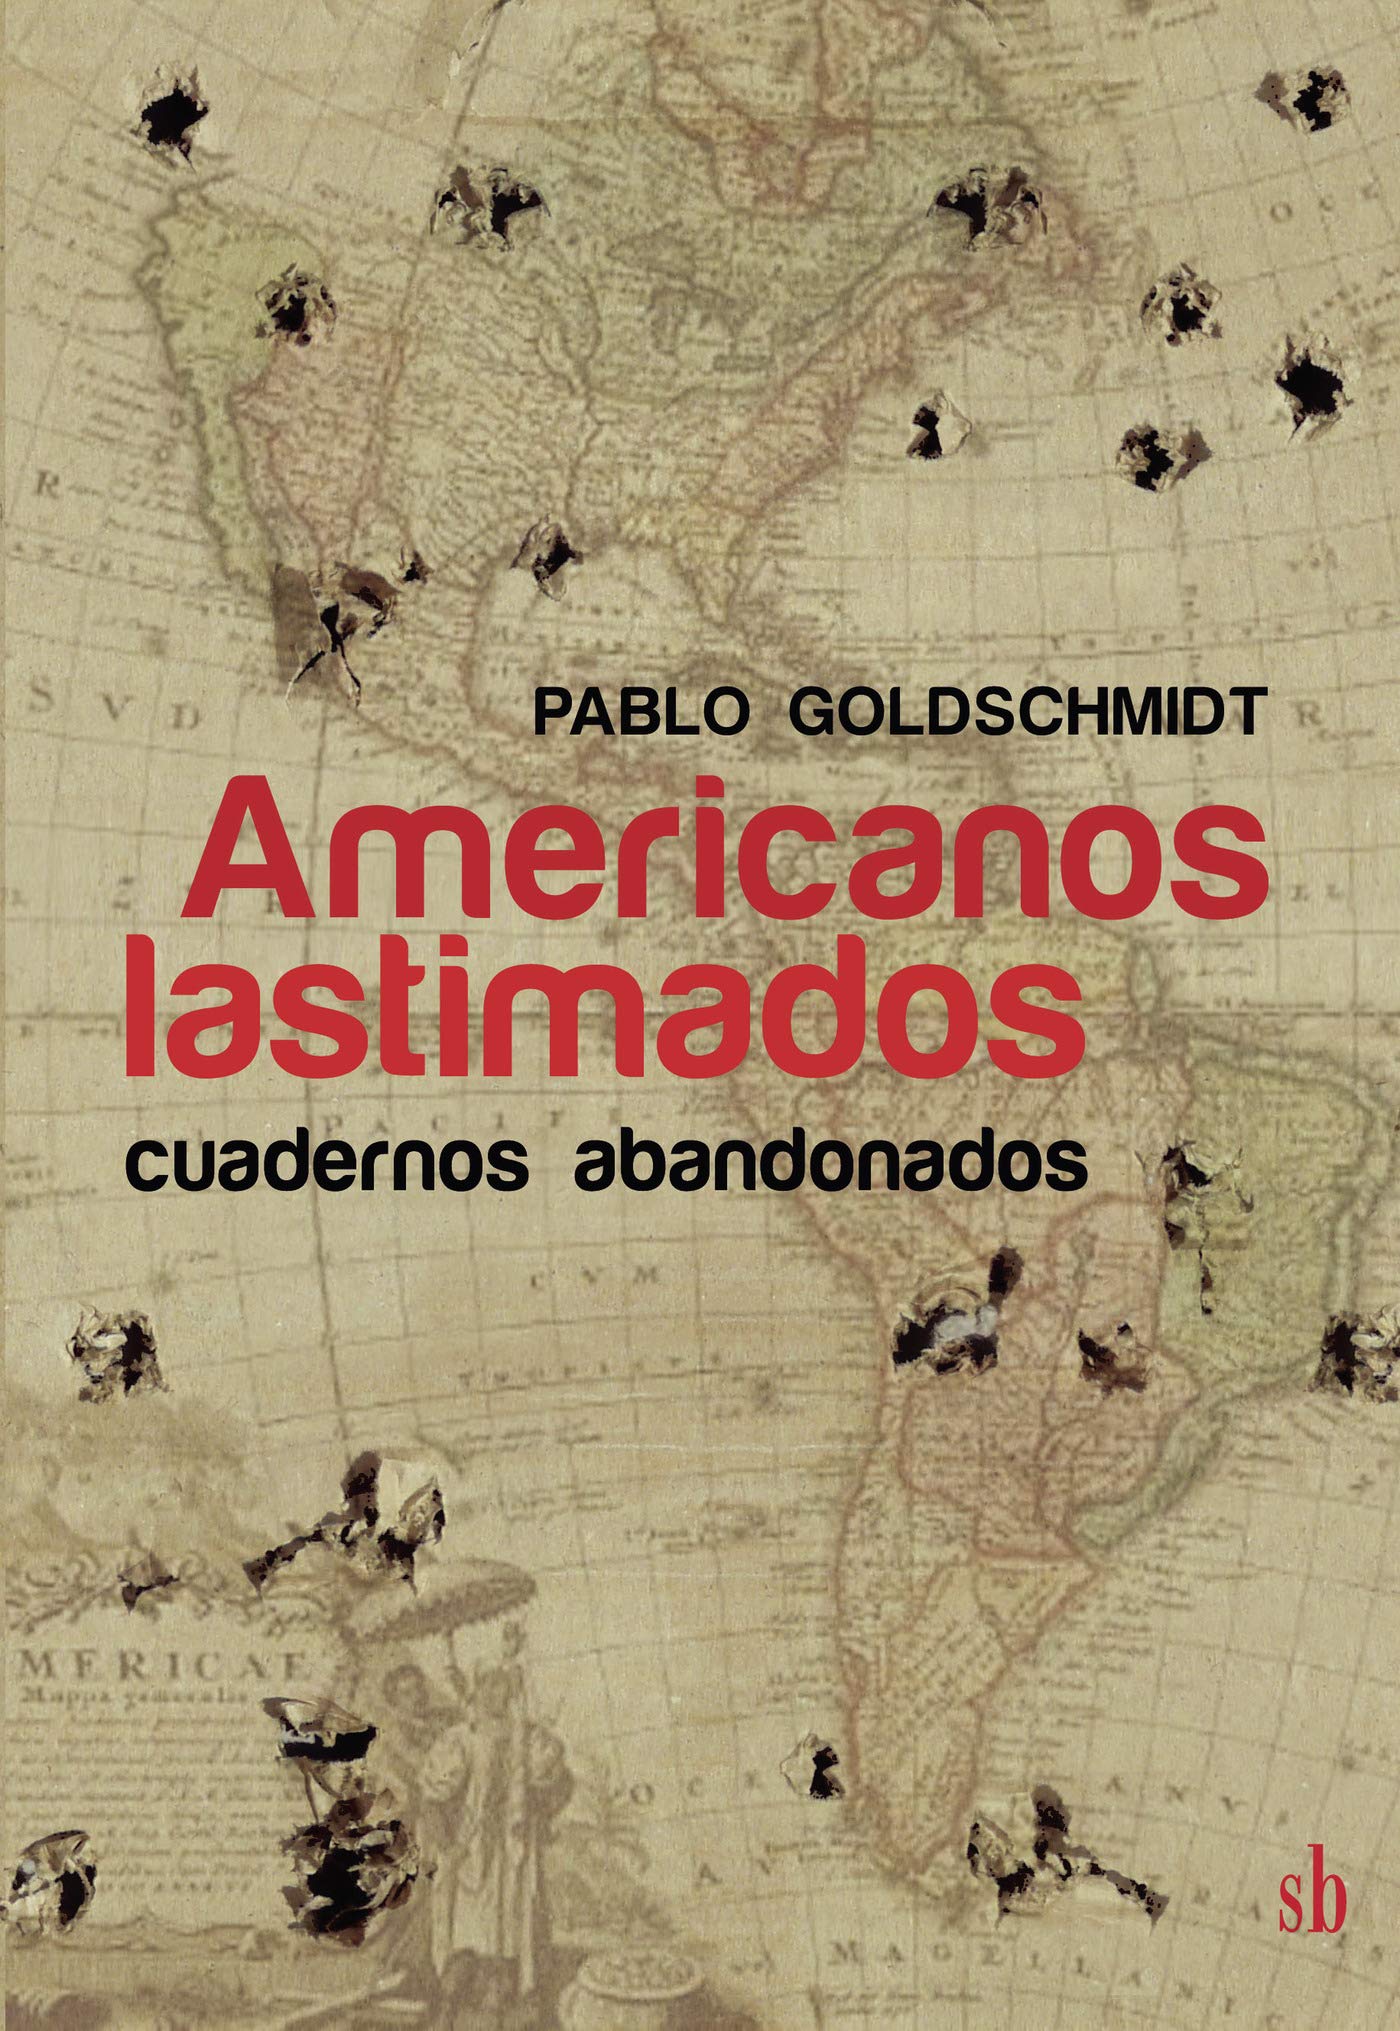 Americanos lastimados (cuadernos abandonados), de Pablo Goldschmidt